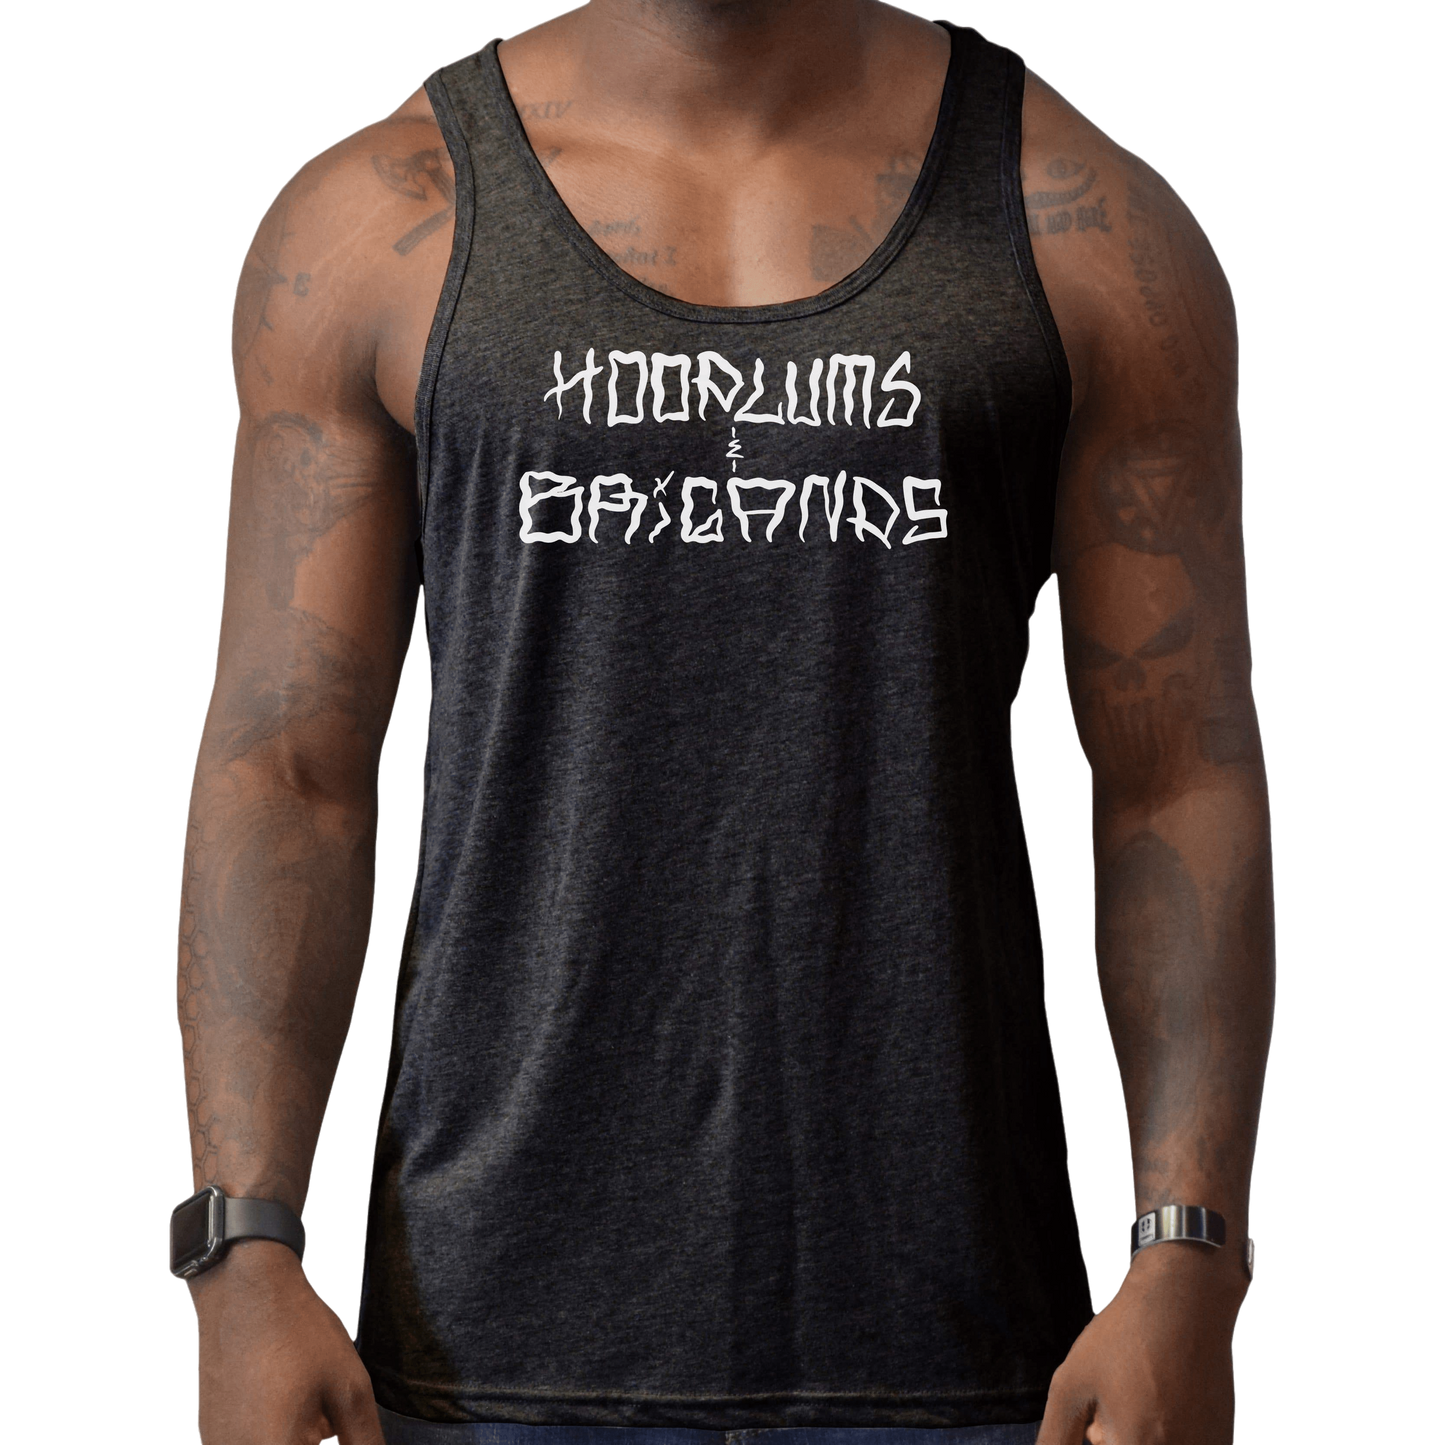 Hoodlums & Brigands Logo Men's Tank - hdlm.brgnd